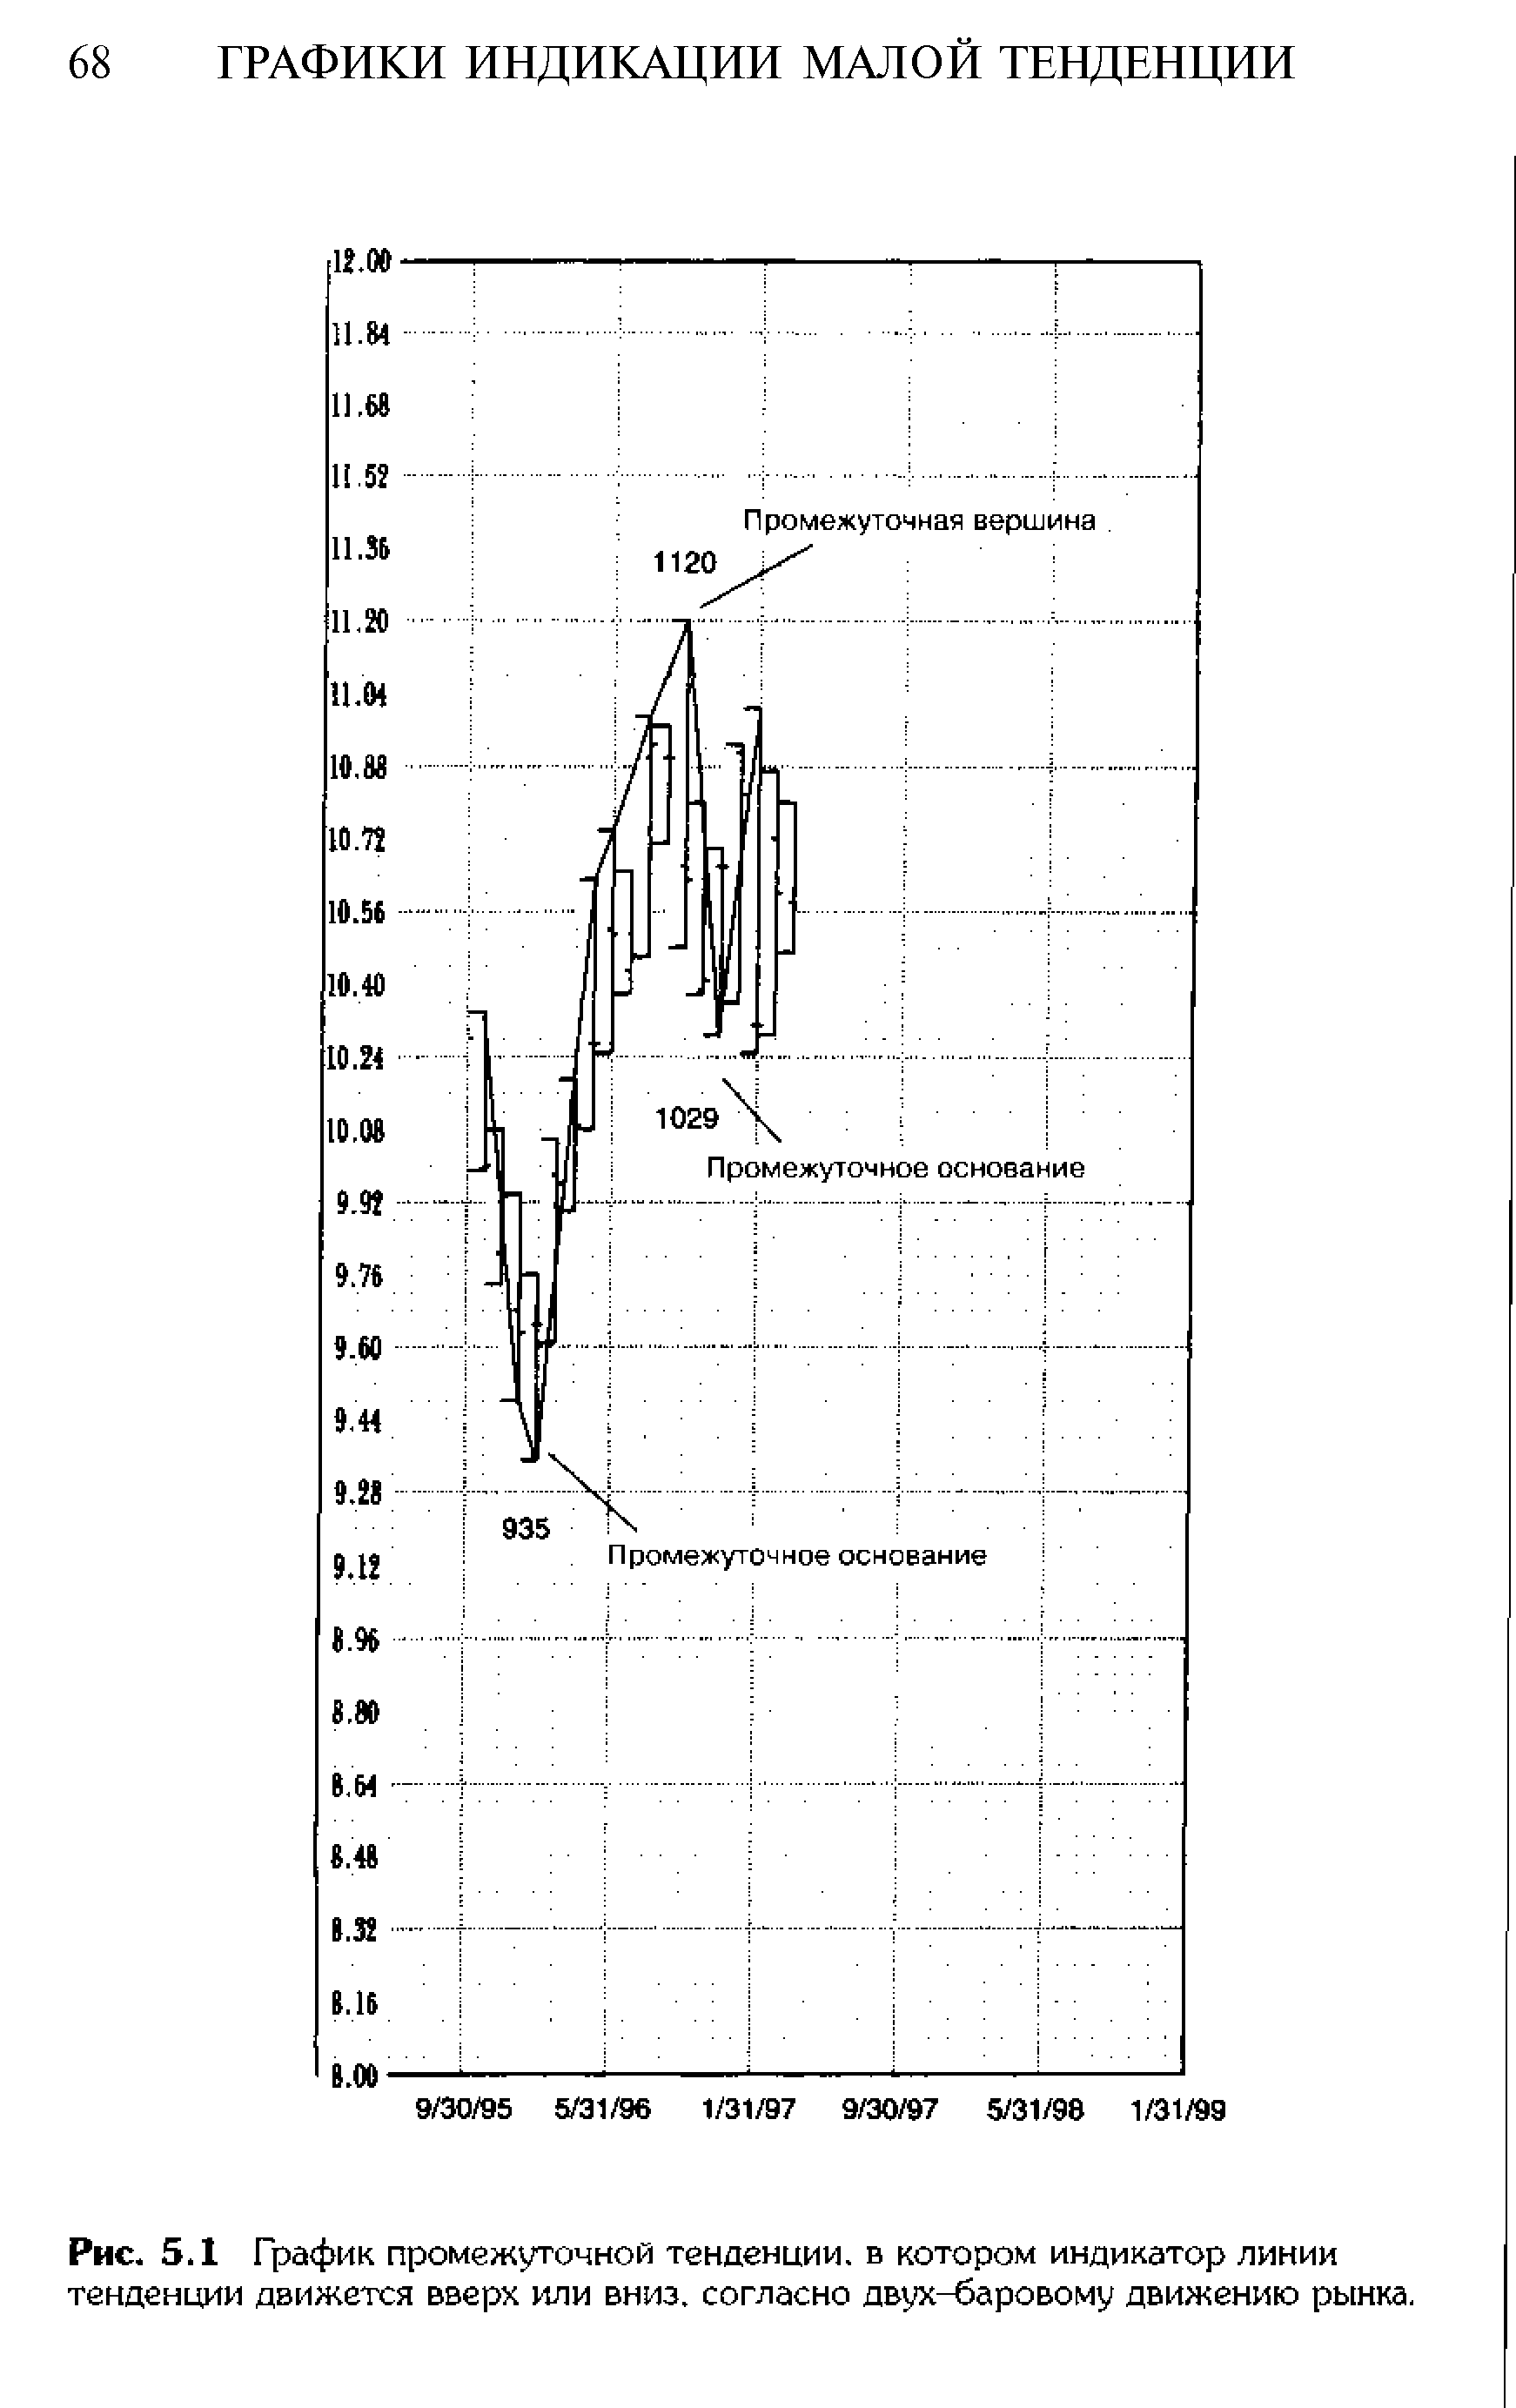 Рис. 5.1 График промежуточной тенденции, в котором индикатор <a href="/info/179293">линии тенденции</a> движется вверх или вниз, согласно двух-баровому движению рынка.
